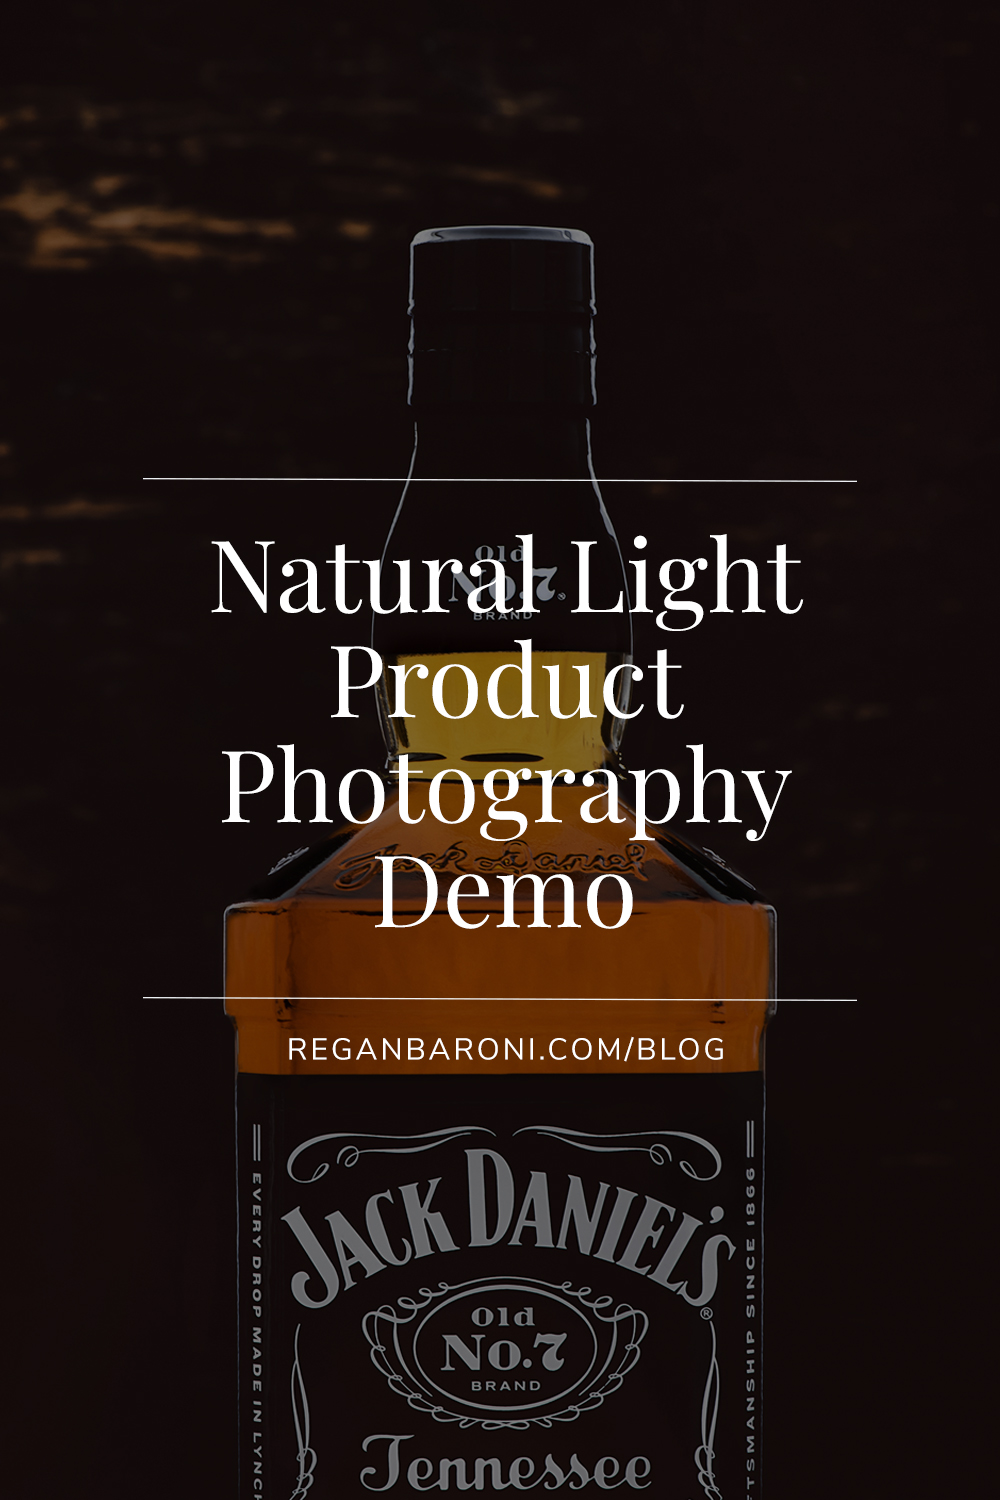 jack daniels bottle shot with natural light